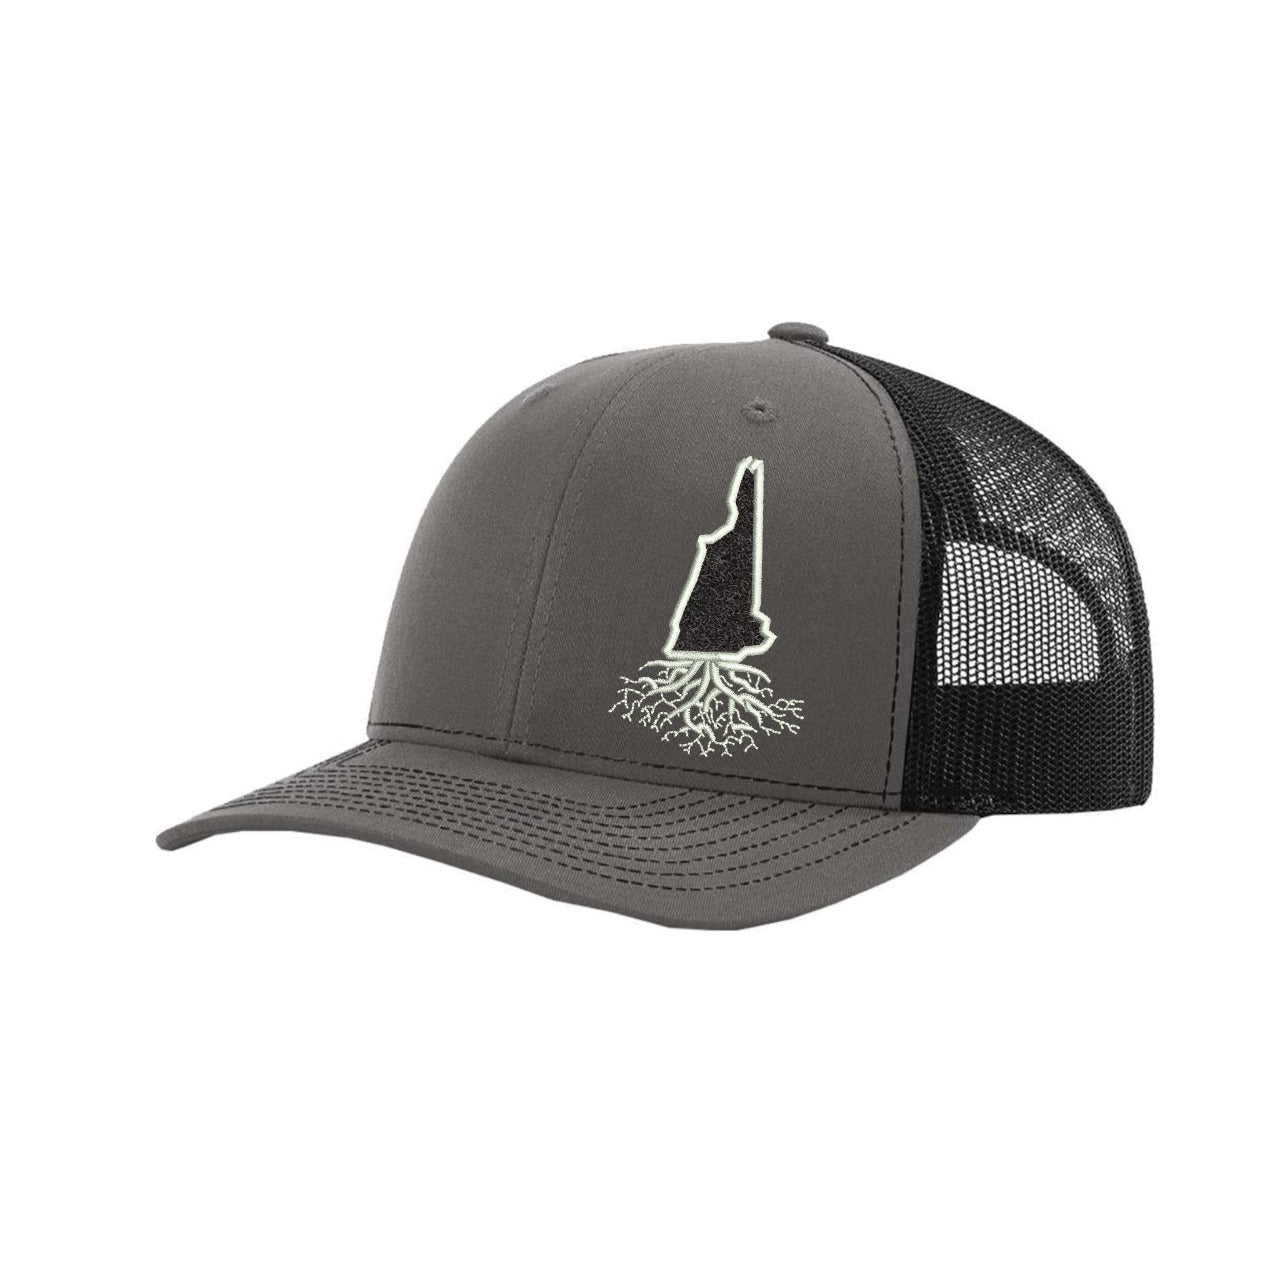 New Hampshire Hook & Loop Trucker Cap - Hats